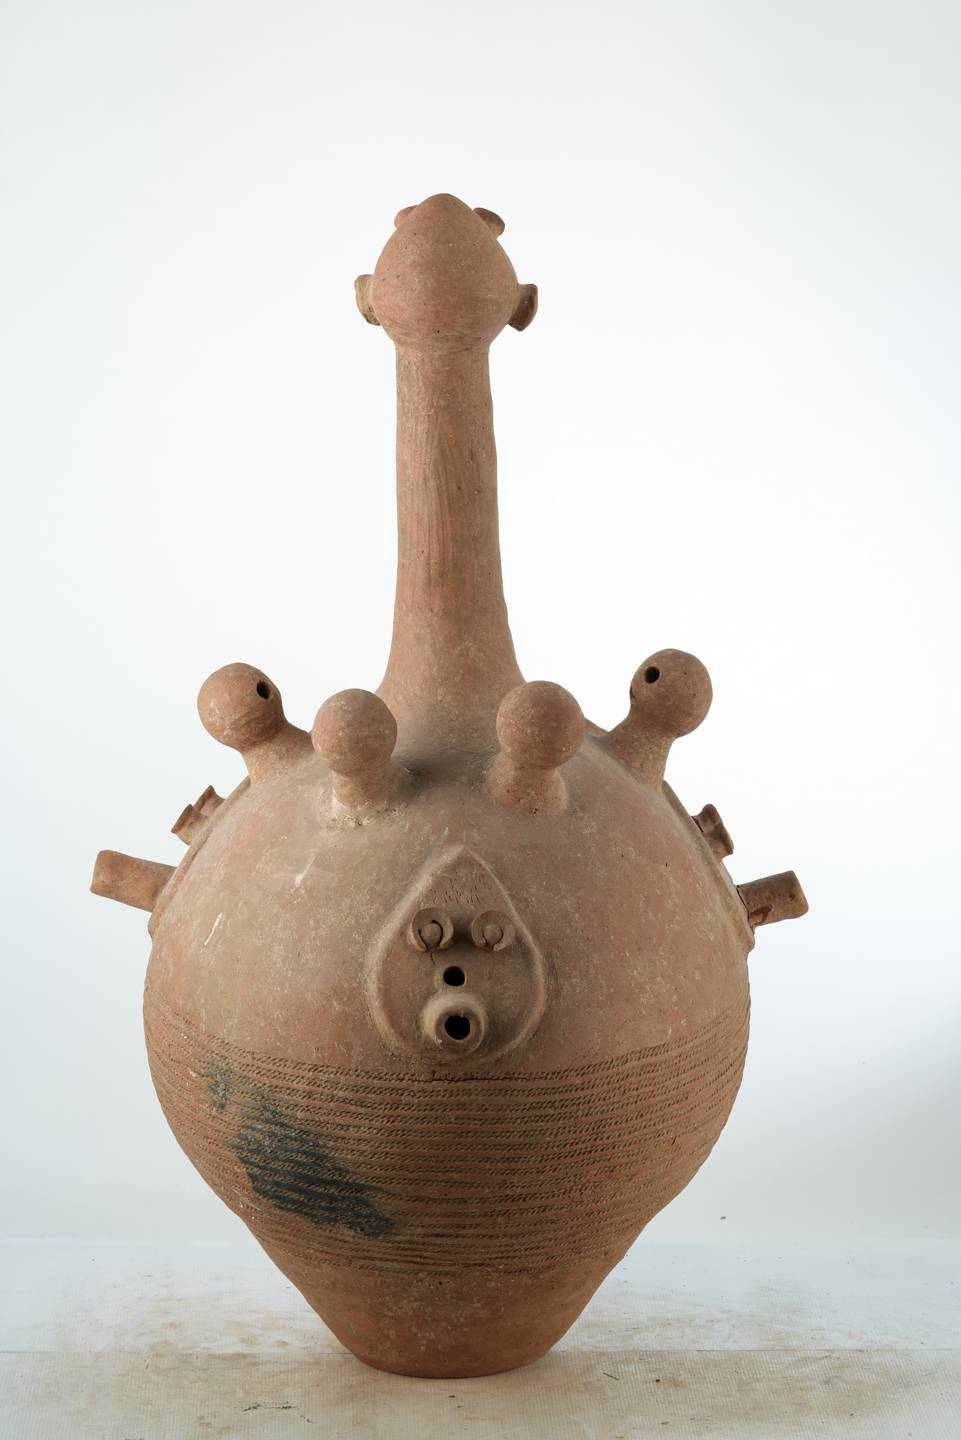 Dogon.(vase), d`afrique : Mali, statuette Dogon.(vase), masque ancien africain Dogon.(vase), art du Mali - Art Africain, collection privées Belgique. Statue africaine de la tribu des Dogon.(vase), provenant du Mali, 1973 Vase BANKONI de cérémonie funéraire en terre cuite .Le vase est ouvert par la base.Il a une H.de 118cm.et un diam.de60cm.Il représente un corps avec un long cou plus la tête 45cm.  Sur le corps 4 petites boules représentant des têtes avec 3 trous  sybolisant  le nez et  deux yeux en plus  deux petits bras.Sous les petites têtes 3 visages plats avec 2 yeux ,un nez et une bouche allongée trouée. pour laisser passer la fumée.Les traits anthropomorphes accompagnaient les hommes dans les rites rythmant leur existance,le lien sacré entre le vivant et l